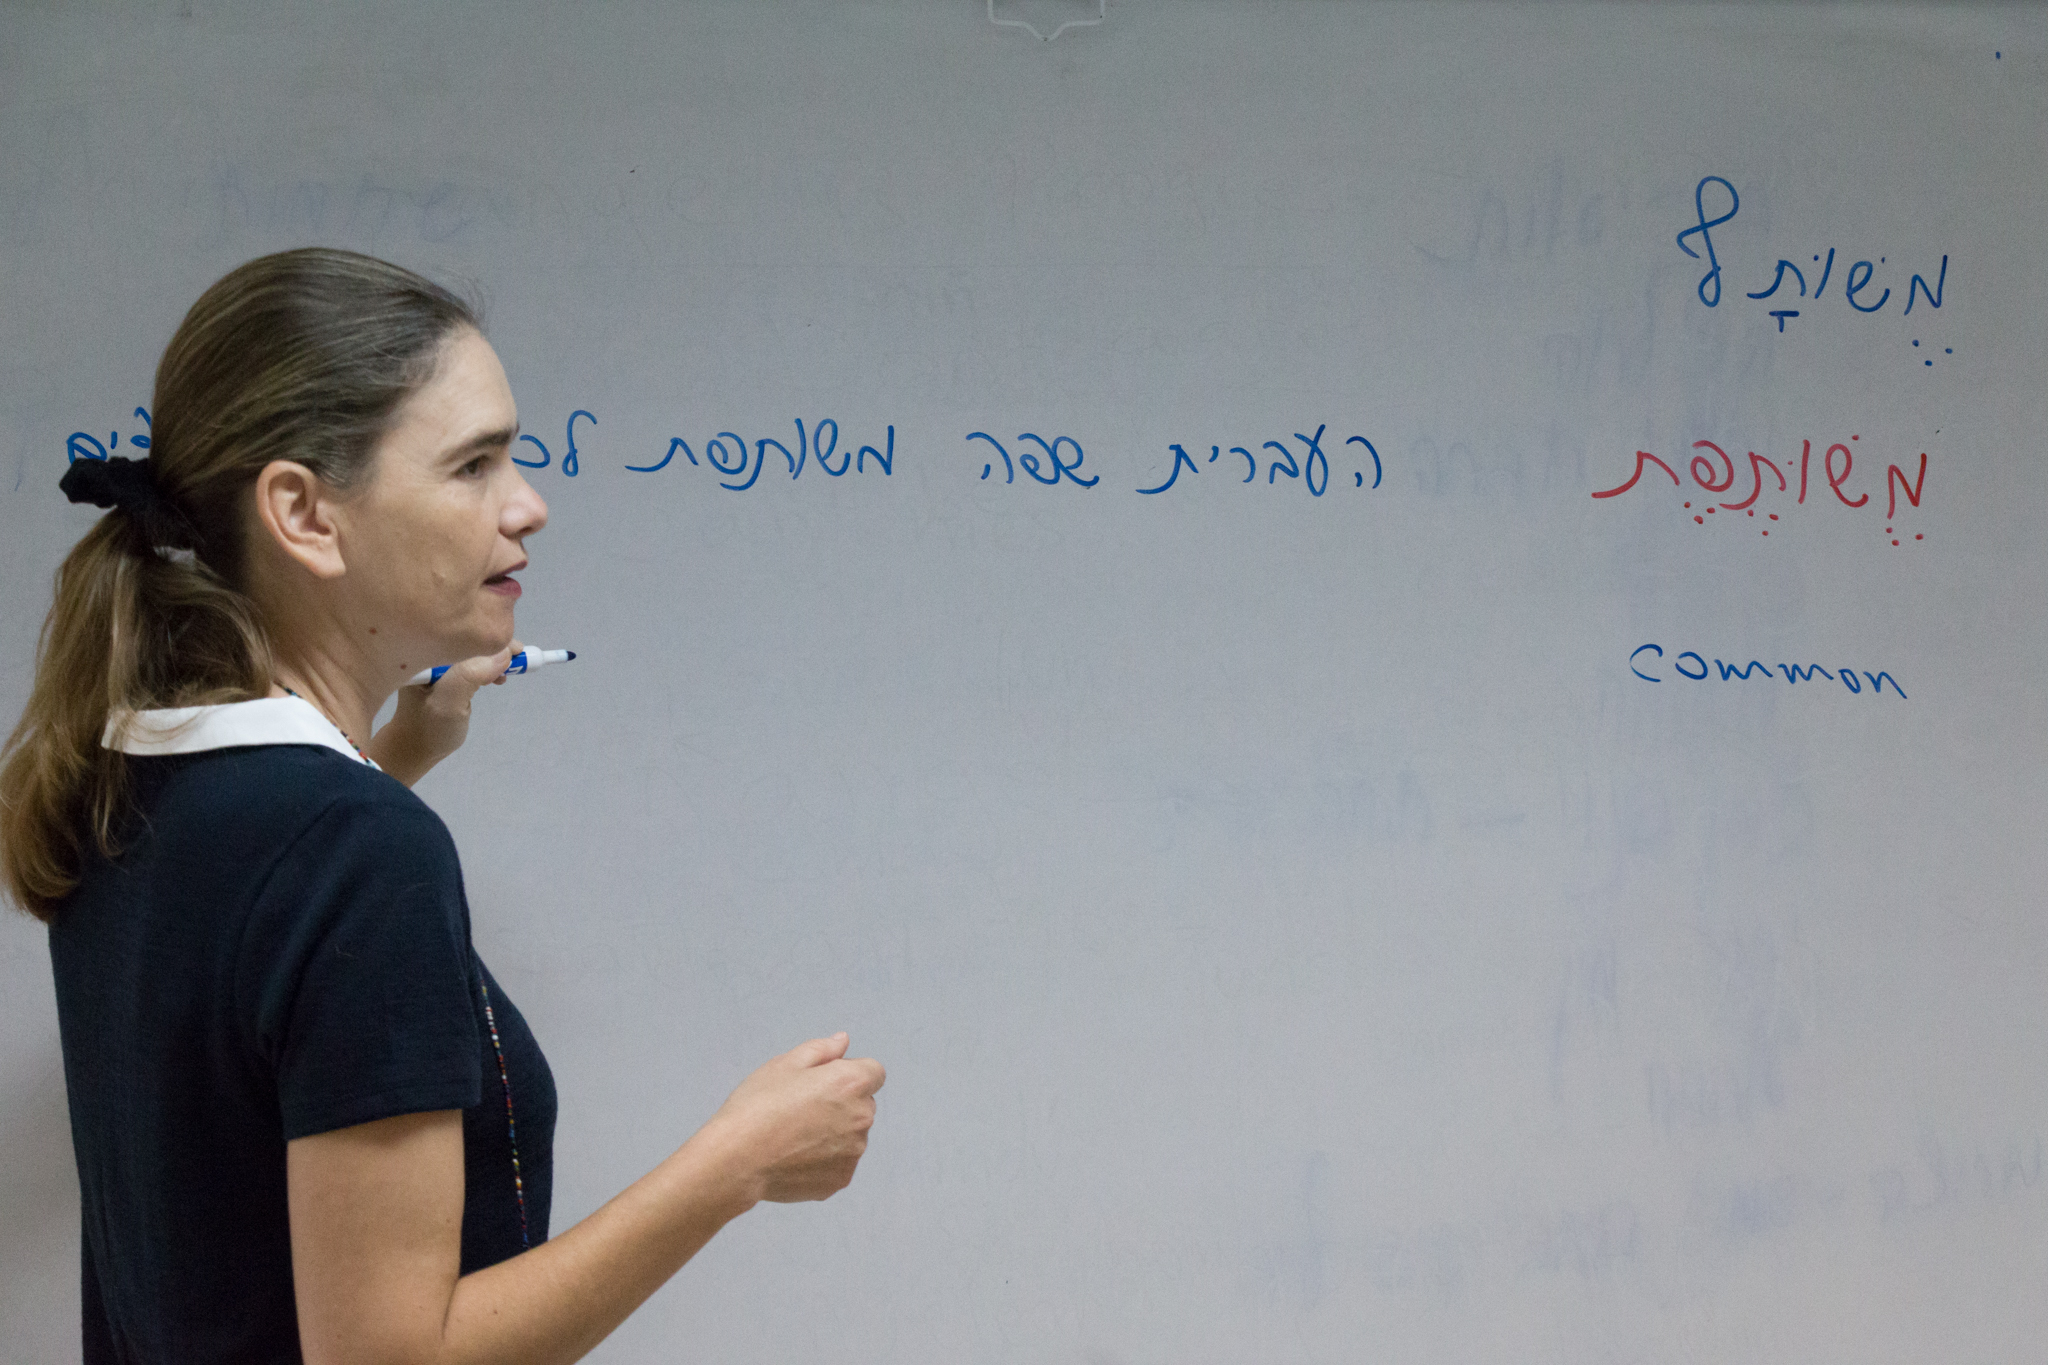 עיריית רעננה מזמינה עולים חדשים ללמוד עברית באולפן אלטרנטיבי במימון מלא של שכר הלימוד